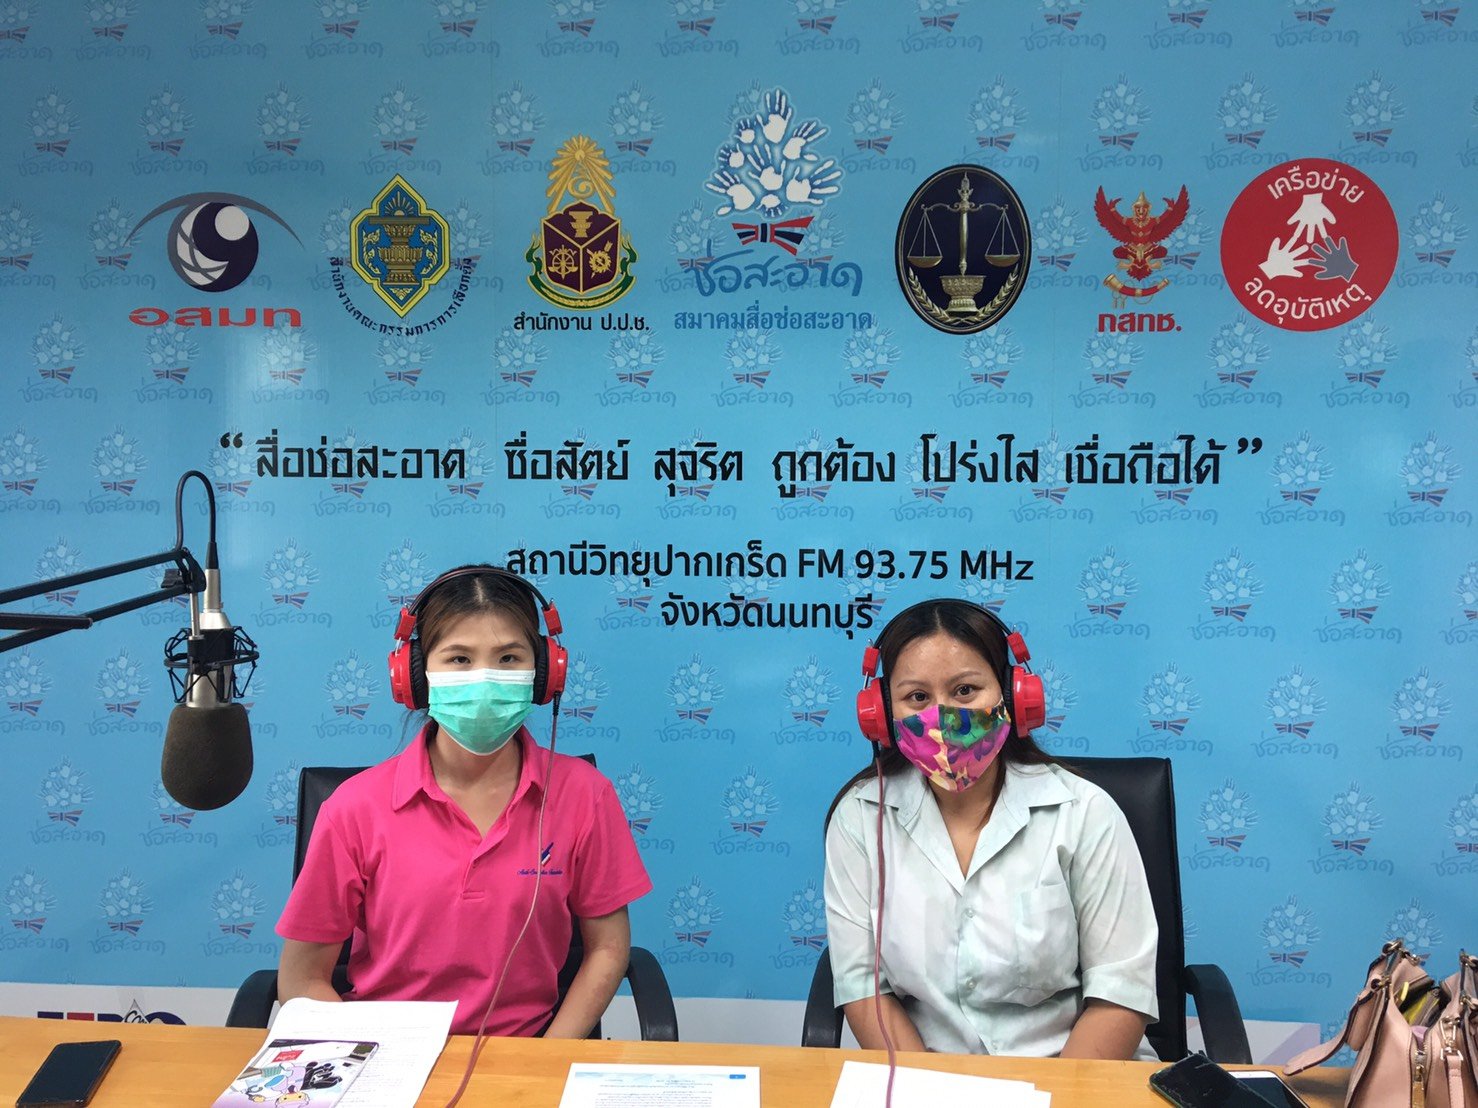 รายการ “คนไทยไม่ทนต่อการทุจริต” วันเสาร์ที่ 12 มิถุนายน 2564 เวลา 18.30-19.00 น.